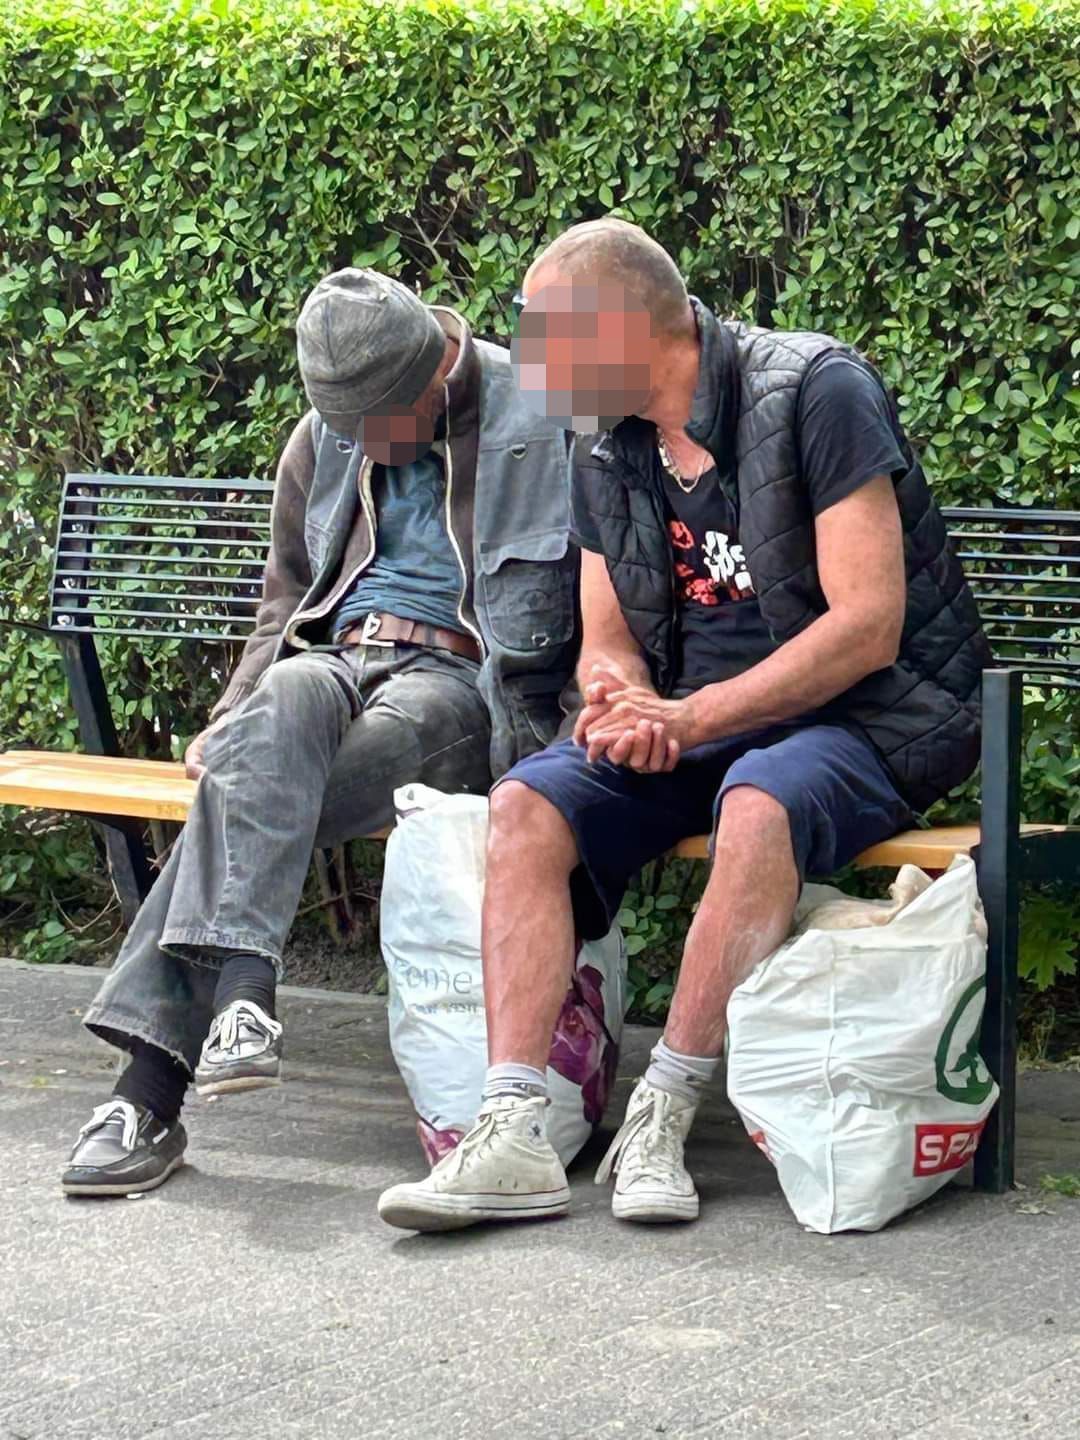 Az italozó, szemetelő hajléktalanokkal szemben a közterület-felügyelők a tanúk szerint nem intézkedtek